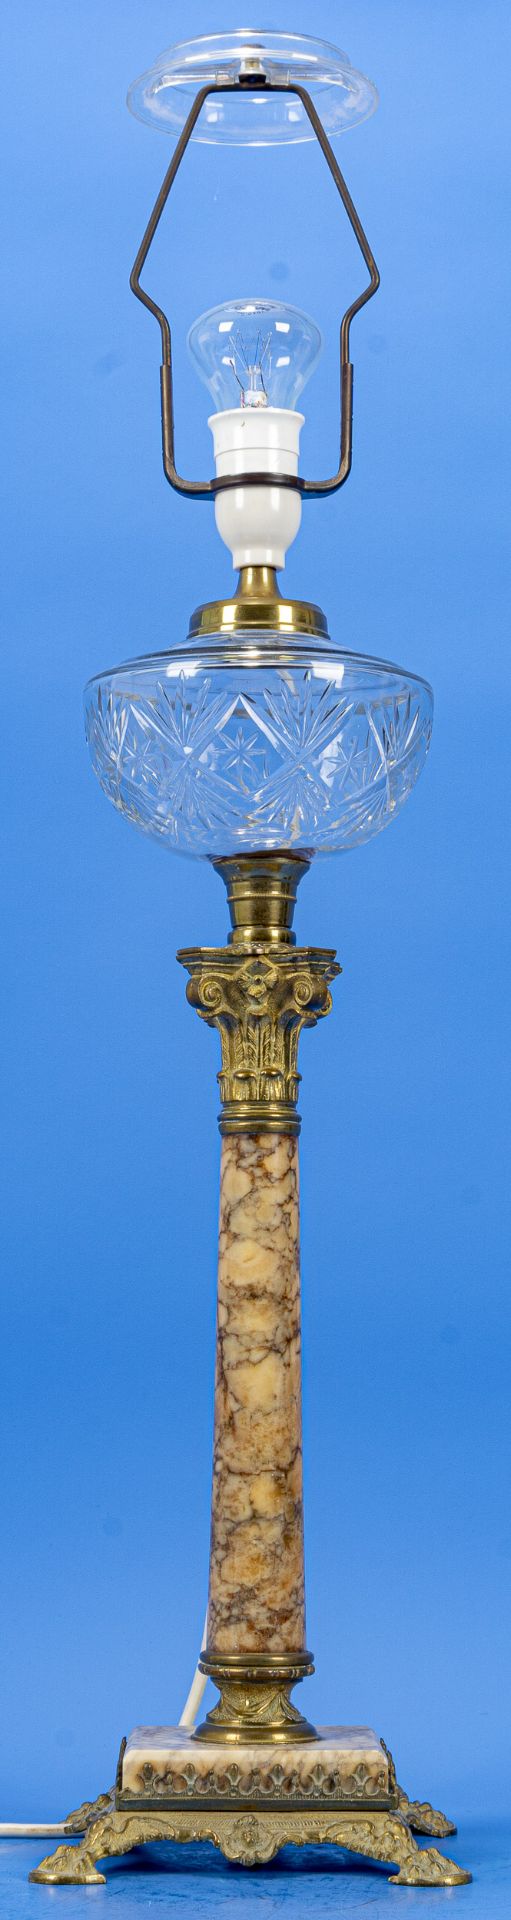 Dekorative "Empire" Tischvase in Form einer nachträglich elektrifizierten Petroleumlampe, Onyxsäule - Bild 2 aus 6